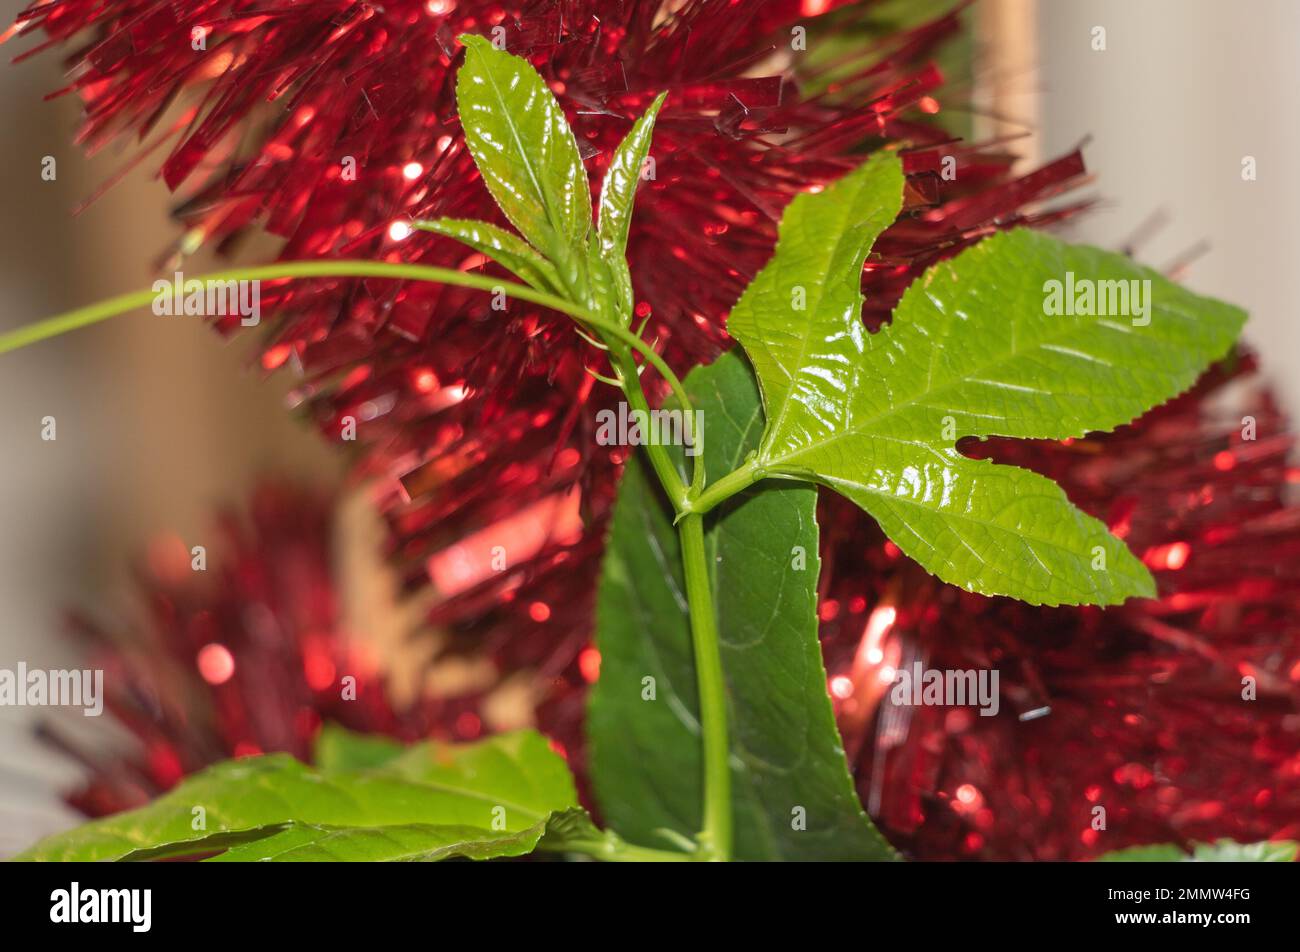 La fraîcheur des feuilles de fruits de la passion sur fond rouge de Noël Tinsel Banque D'Images